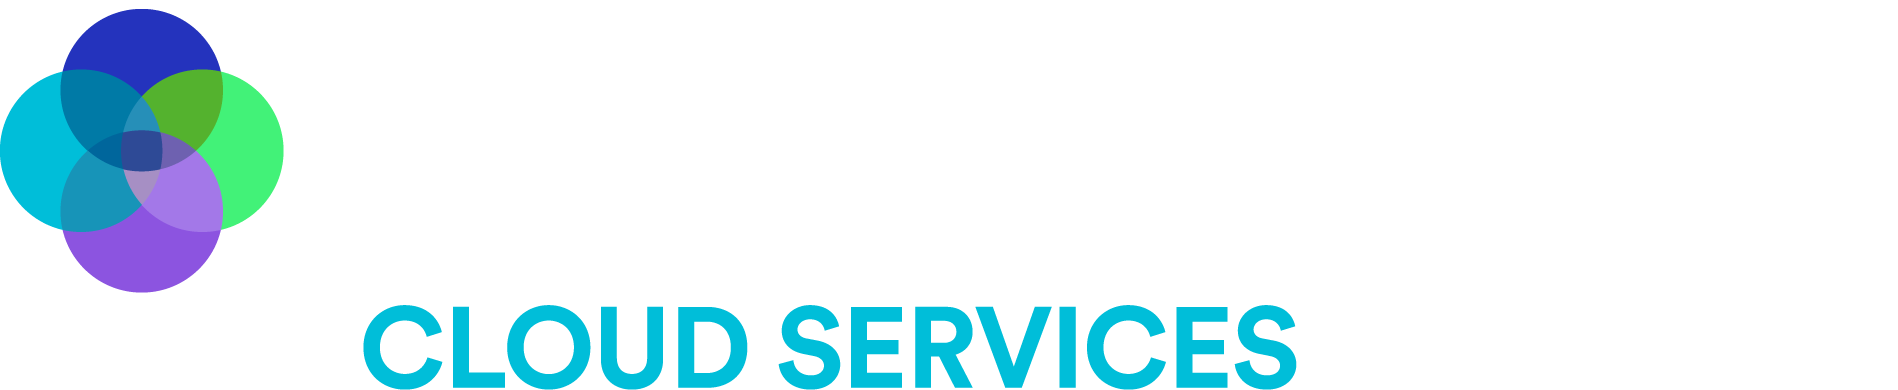 Macquarie Cloud Services